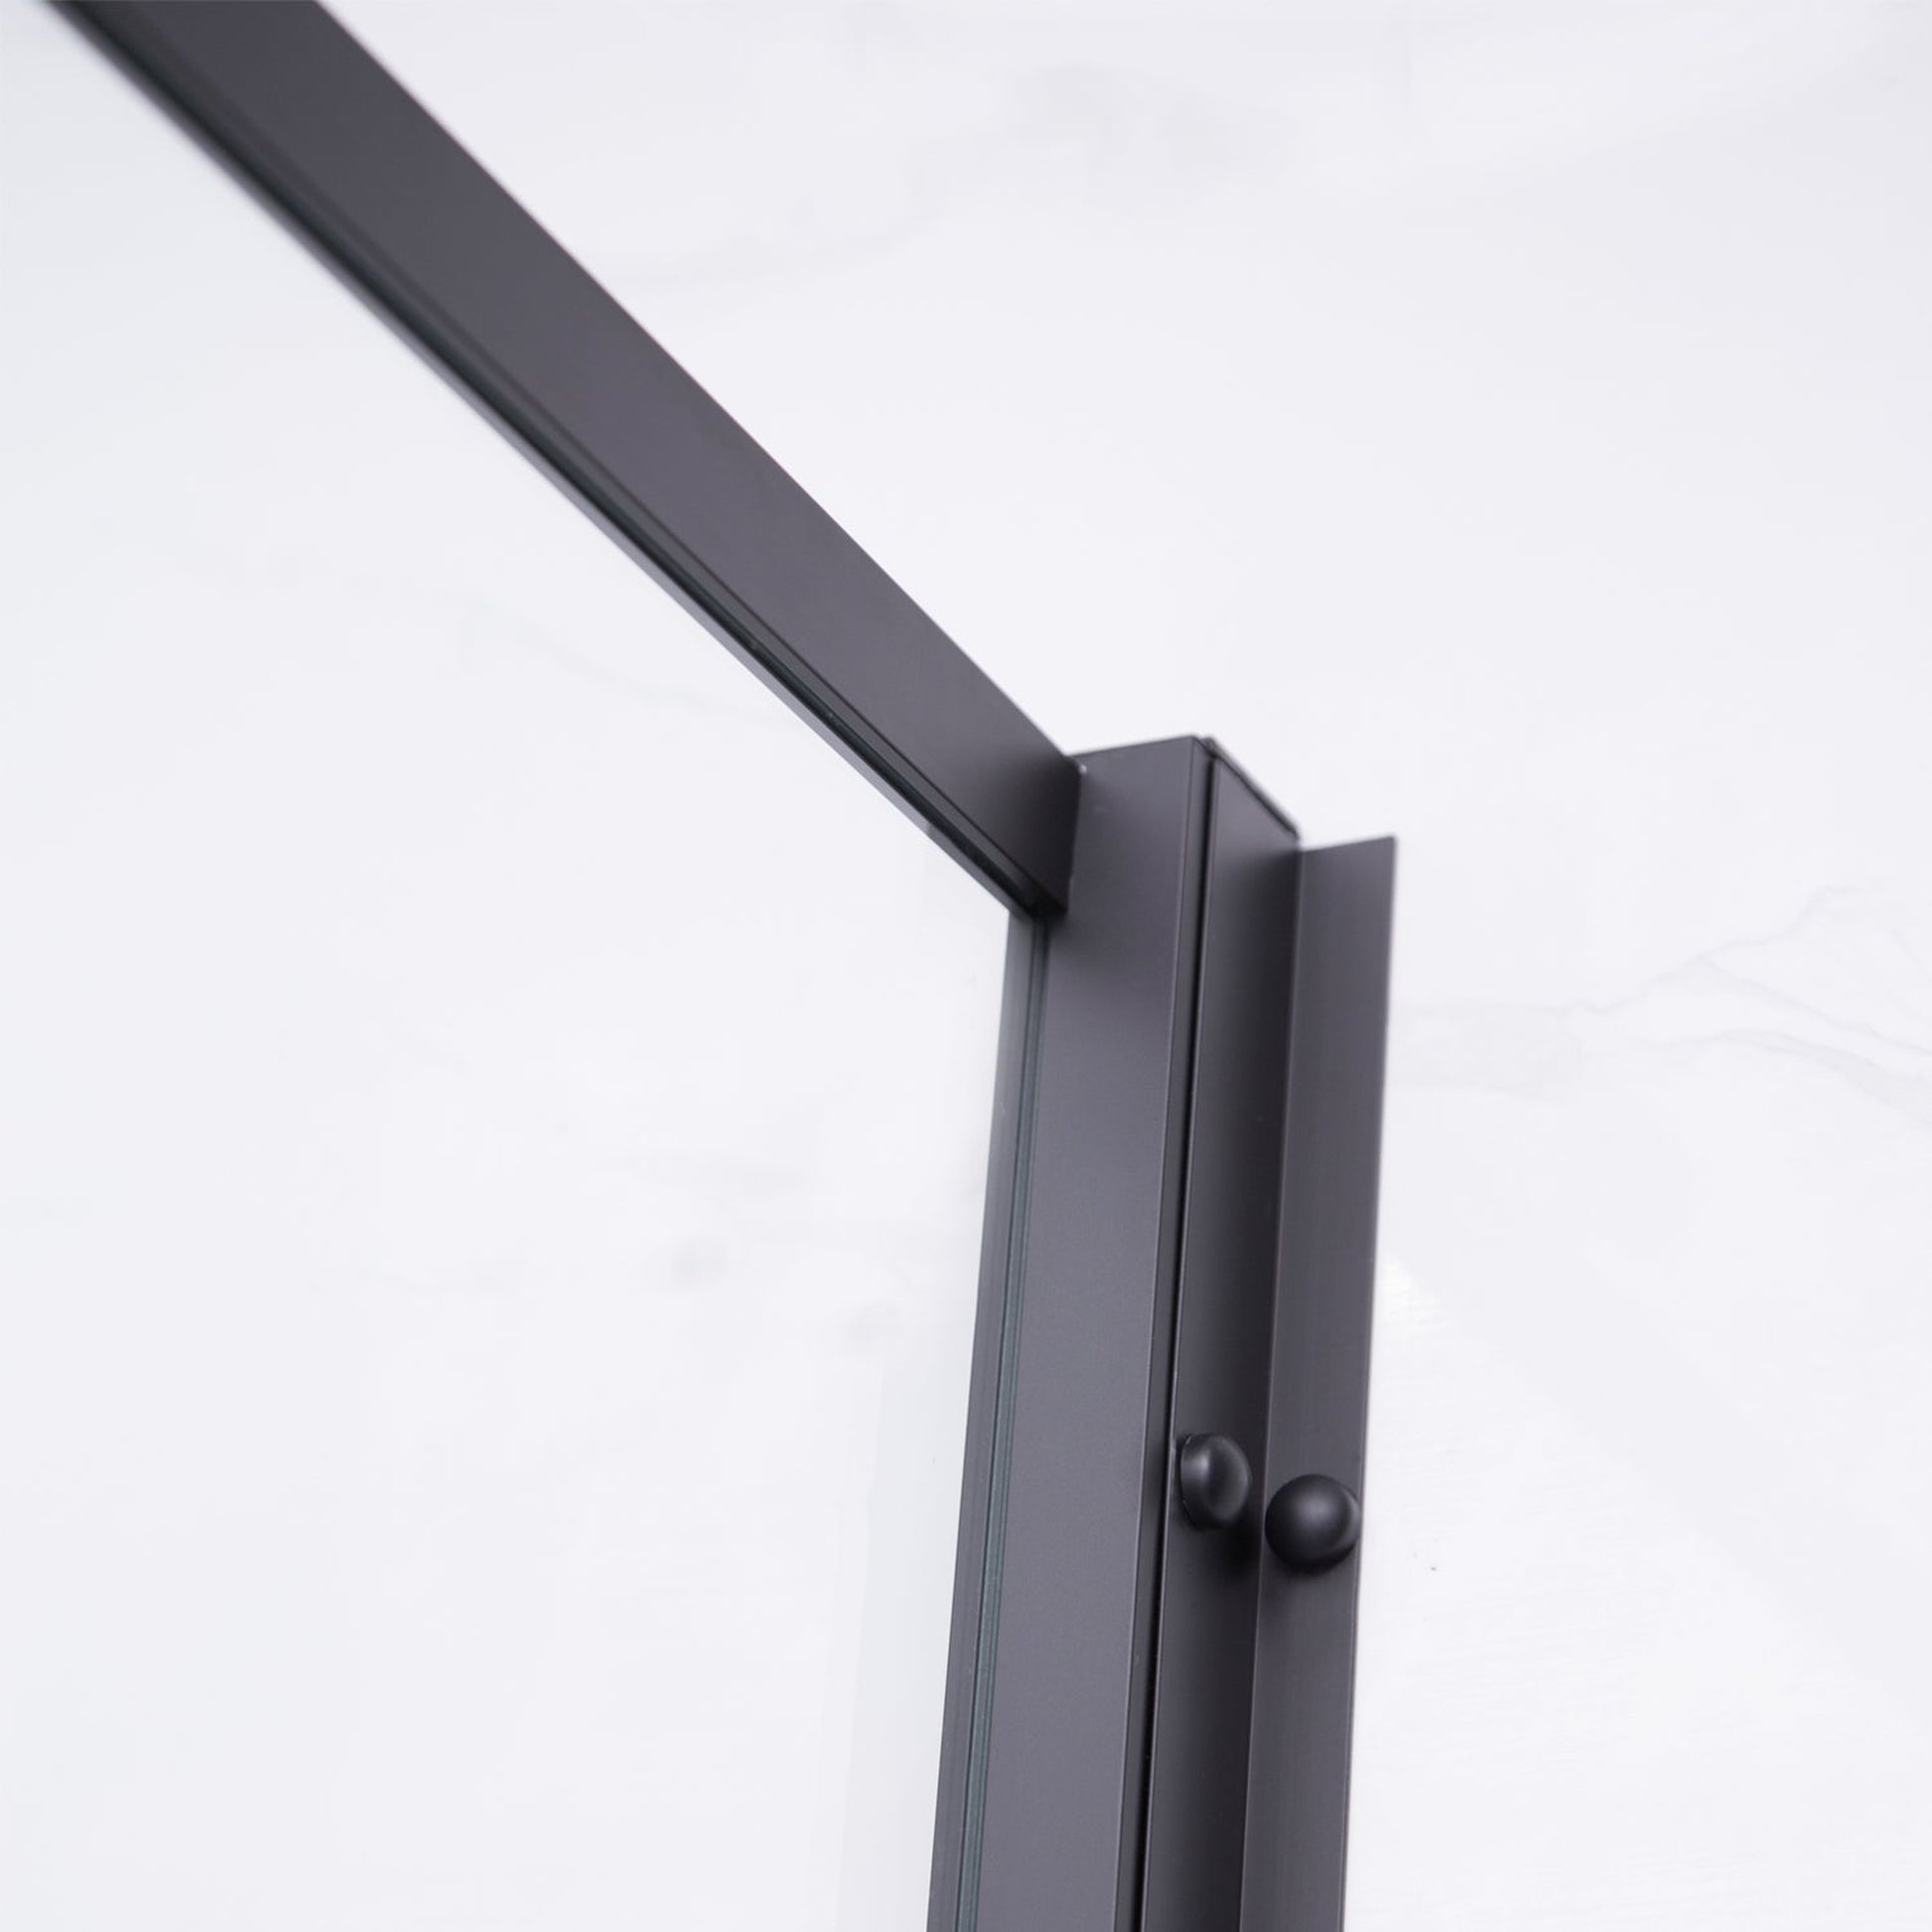 Vinnova Sondrio 60" x 76" Matte Black Rectangle Framed Pivot Shower Door